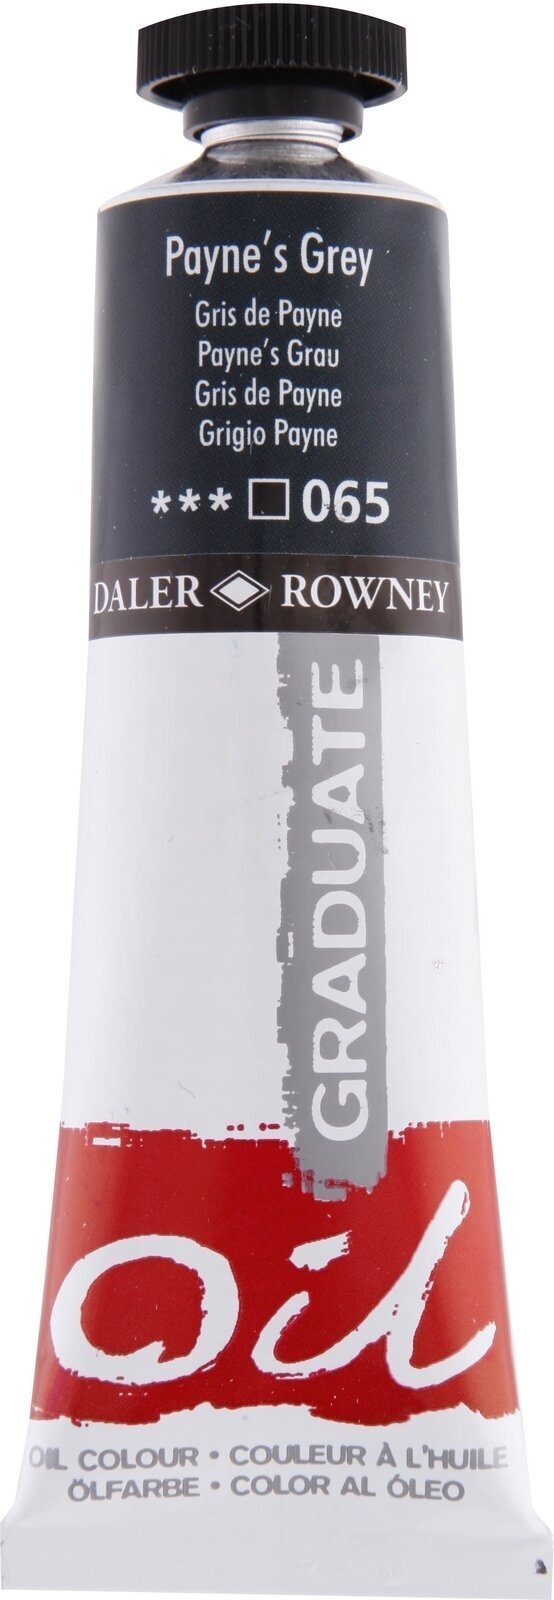 Oil colour Daler Rowney Graduate Oil Paint Paynes Grey 38 ml 1 pc